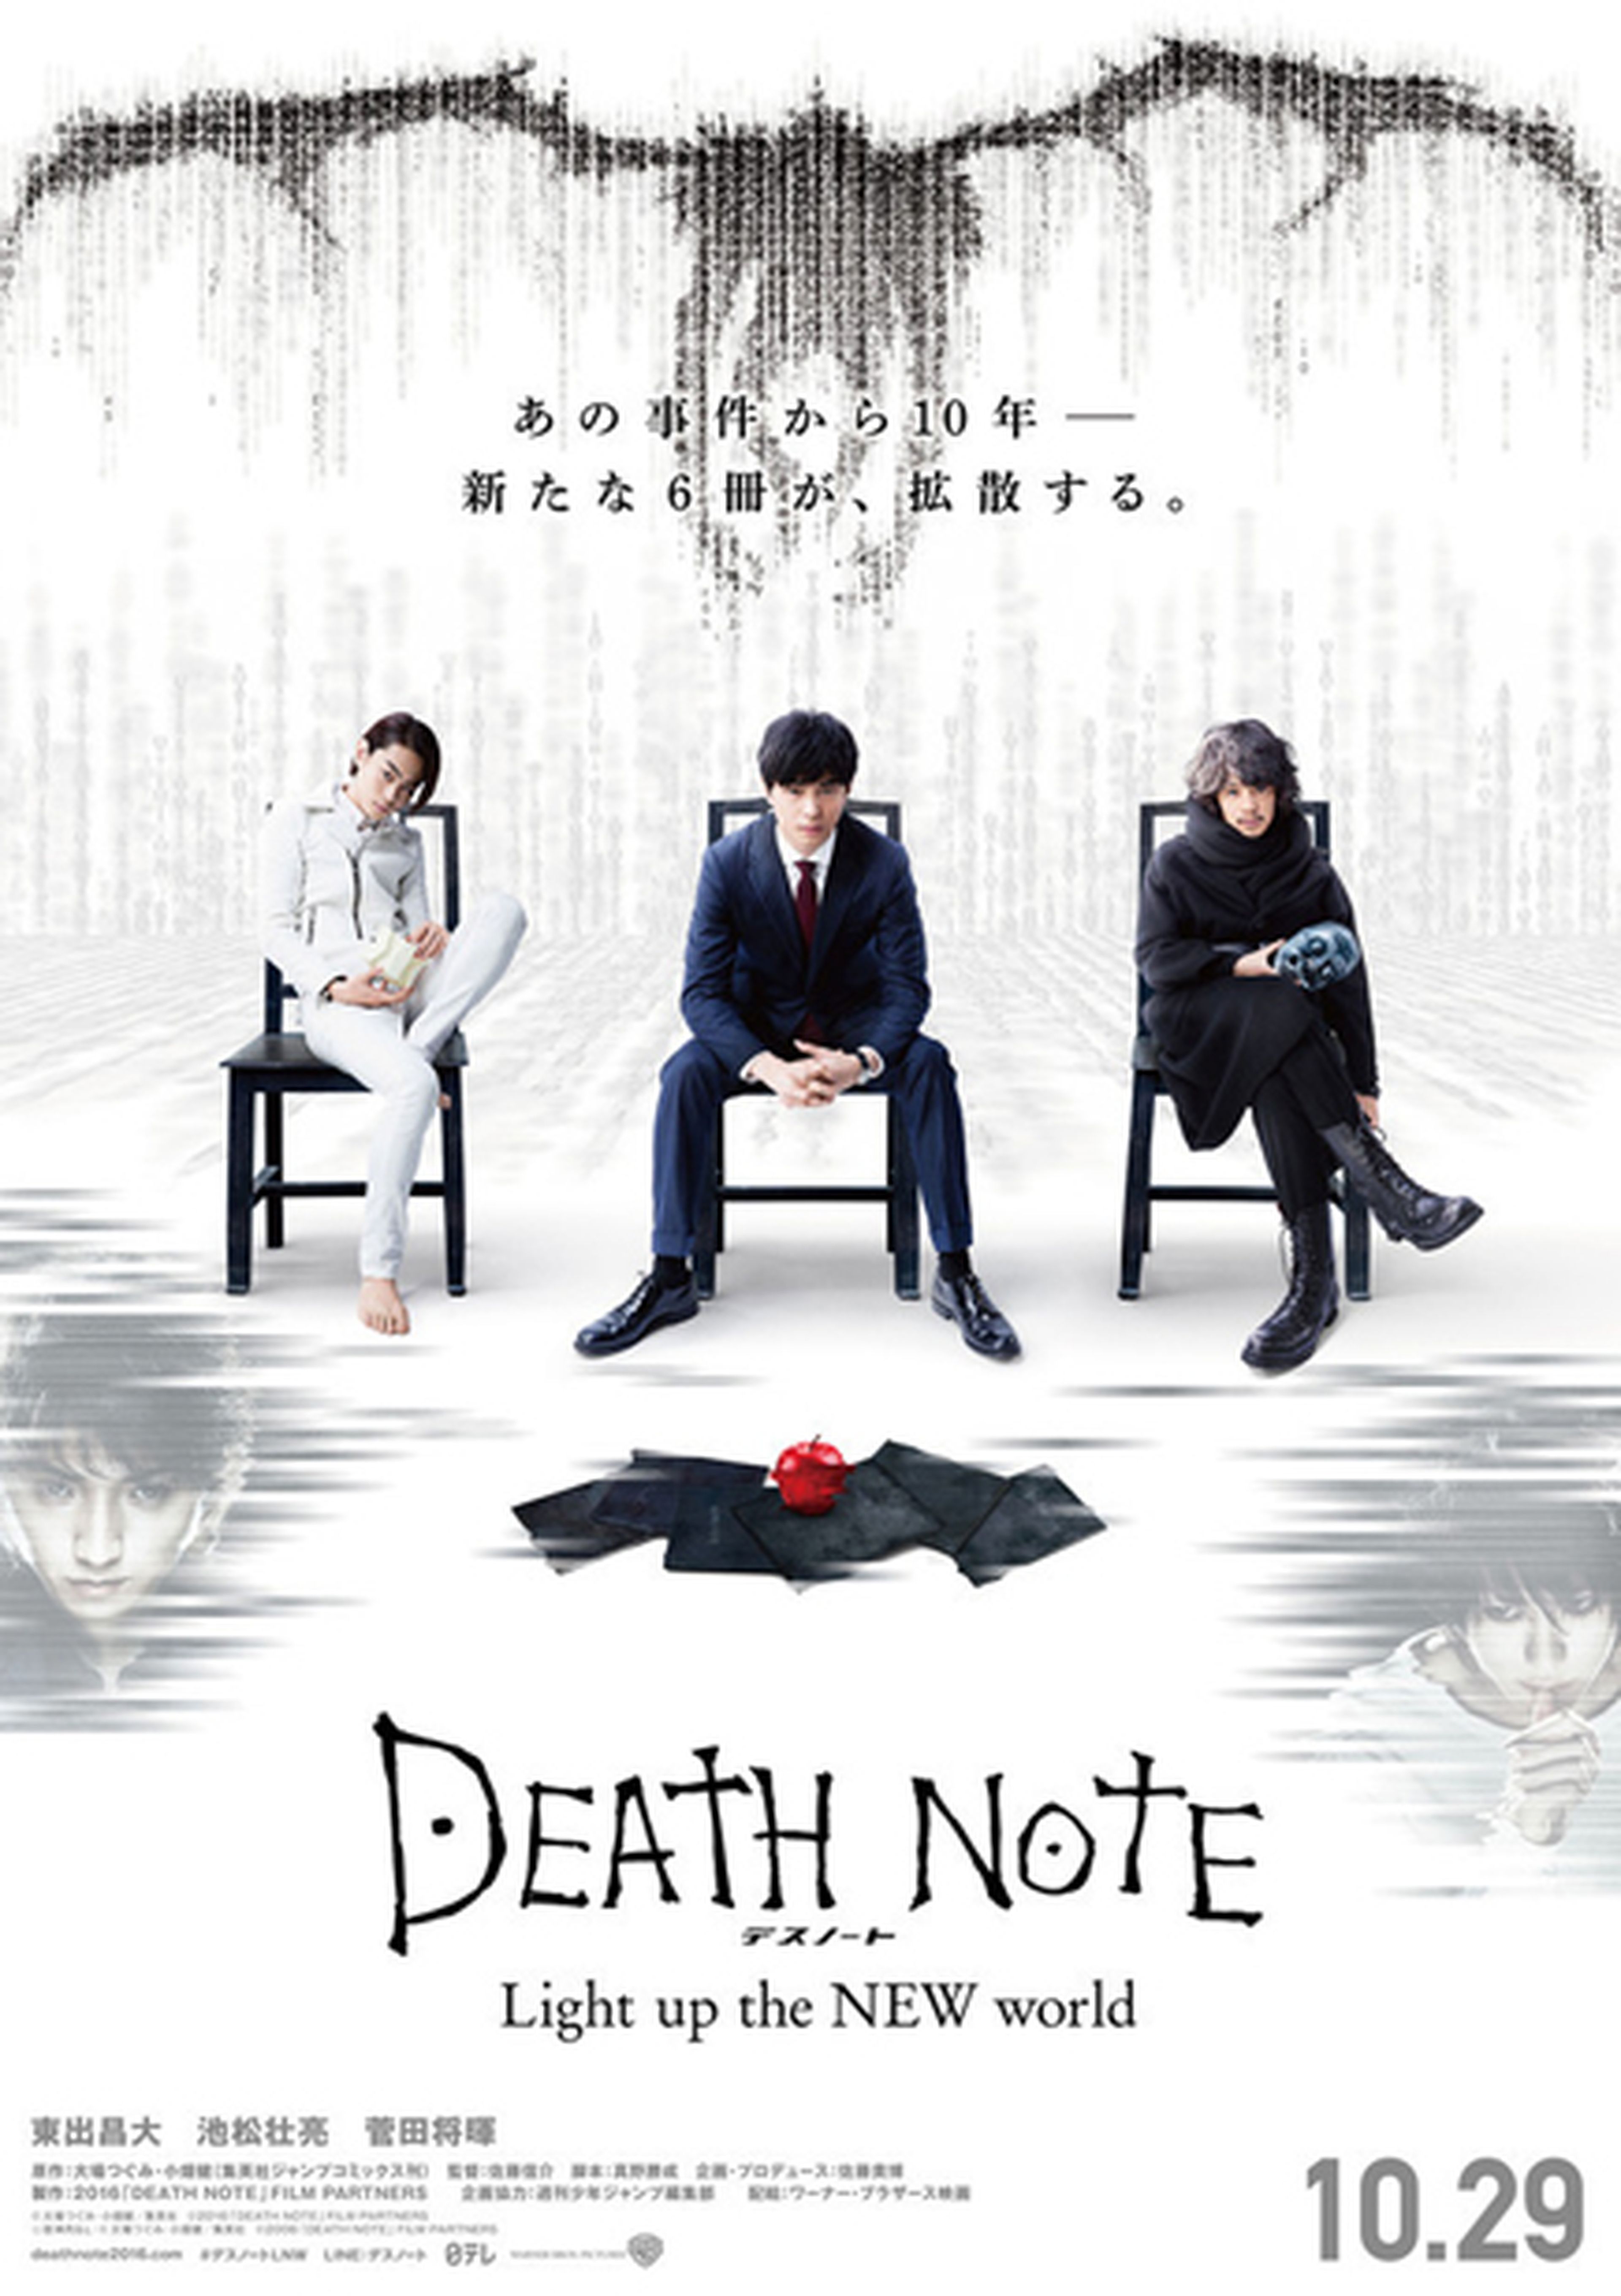 Death Note - Póster del nuevo live-action